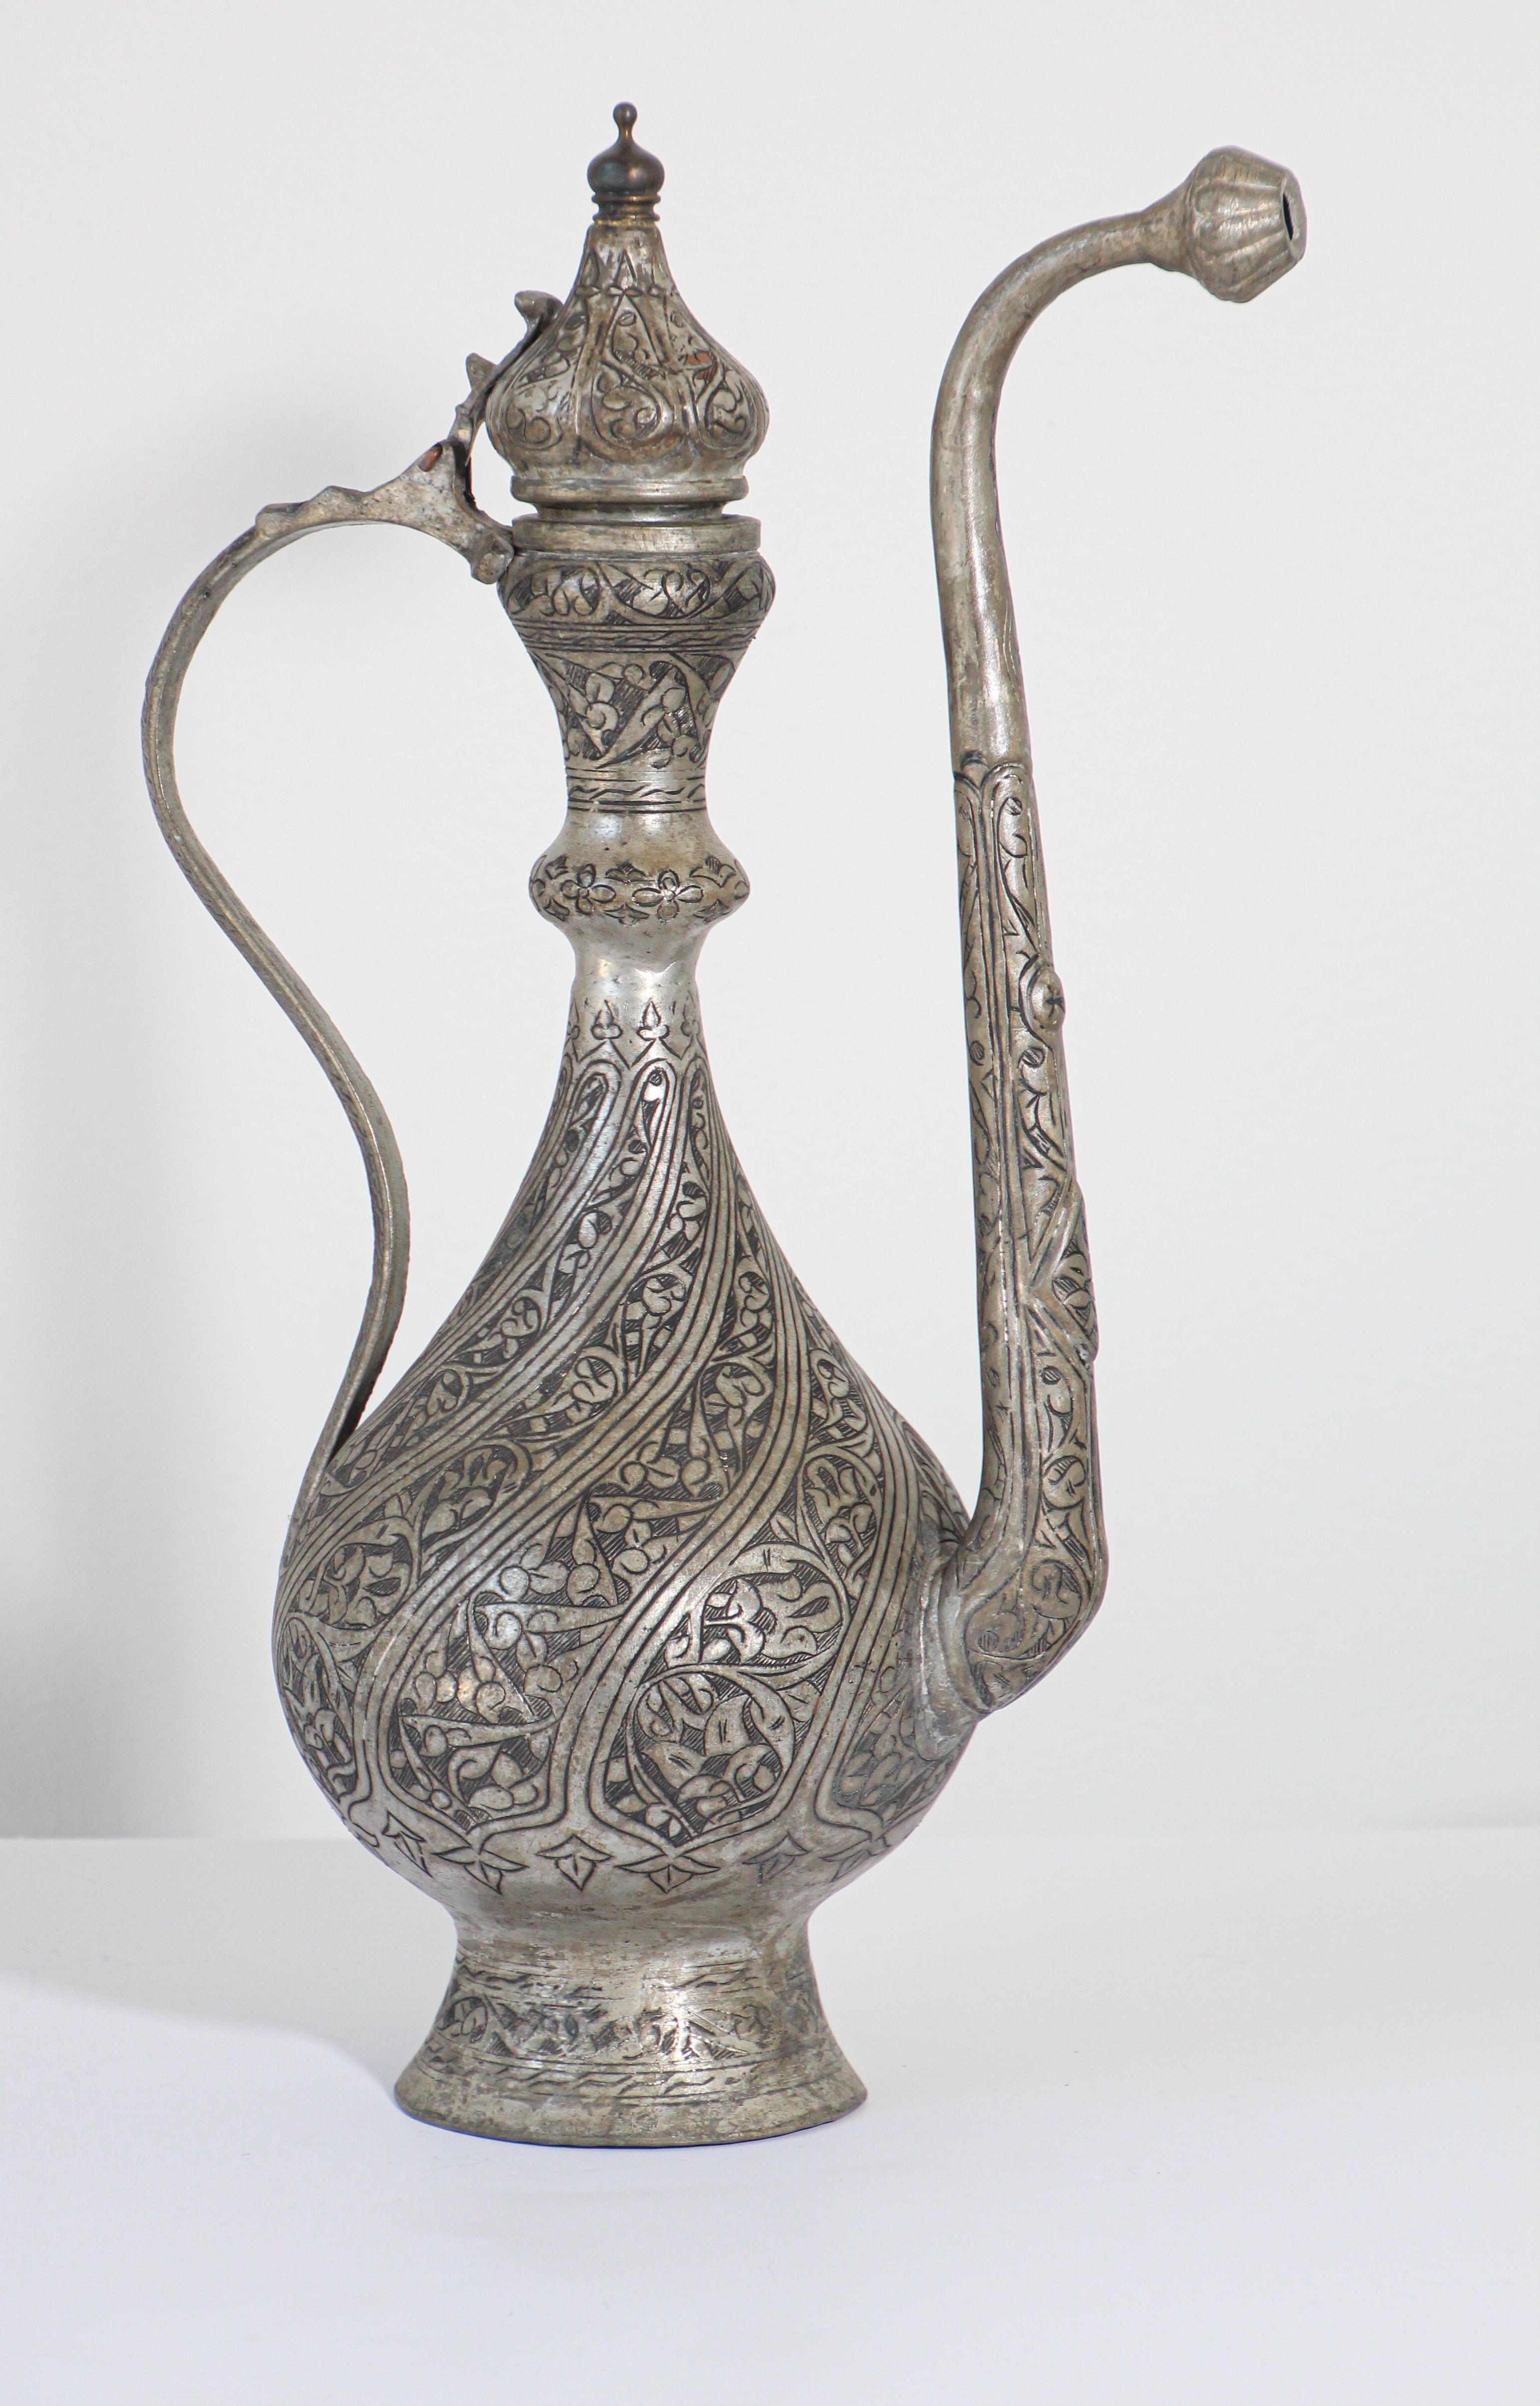 Aiguière d'eau cérémoniale en cuivre étamé, fabriquée à la main, datant du 19e siècle, de style islamique turc et ottoman.
Ancienne aiguière de style islamique asiatique du Moyen-Orient.
Le corps bulbeux avec un pied évasé, un long col effilé avec